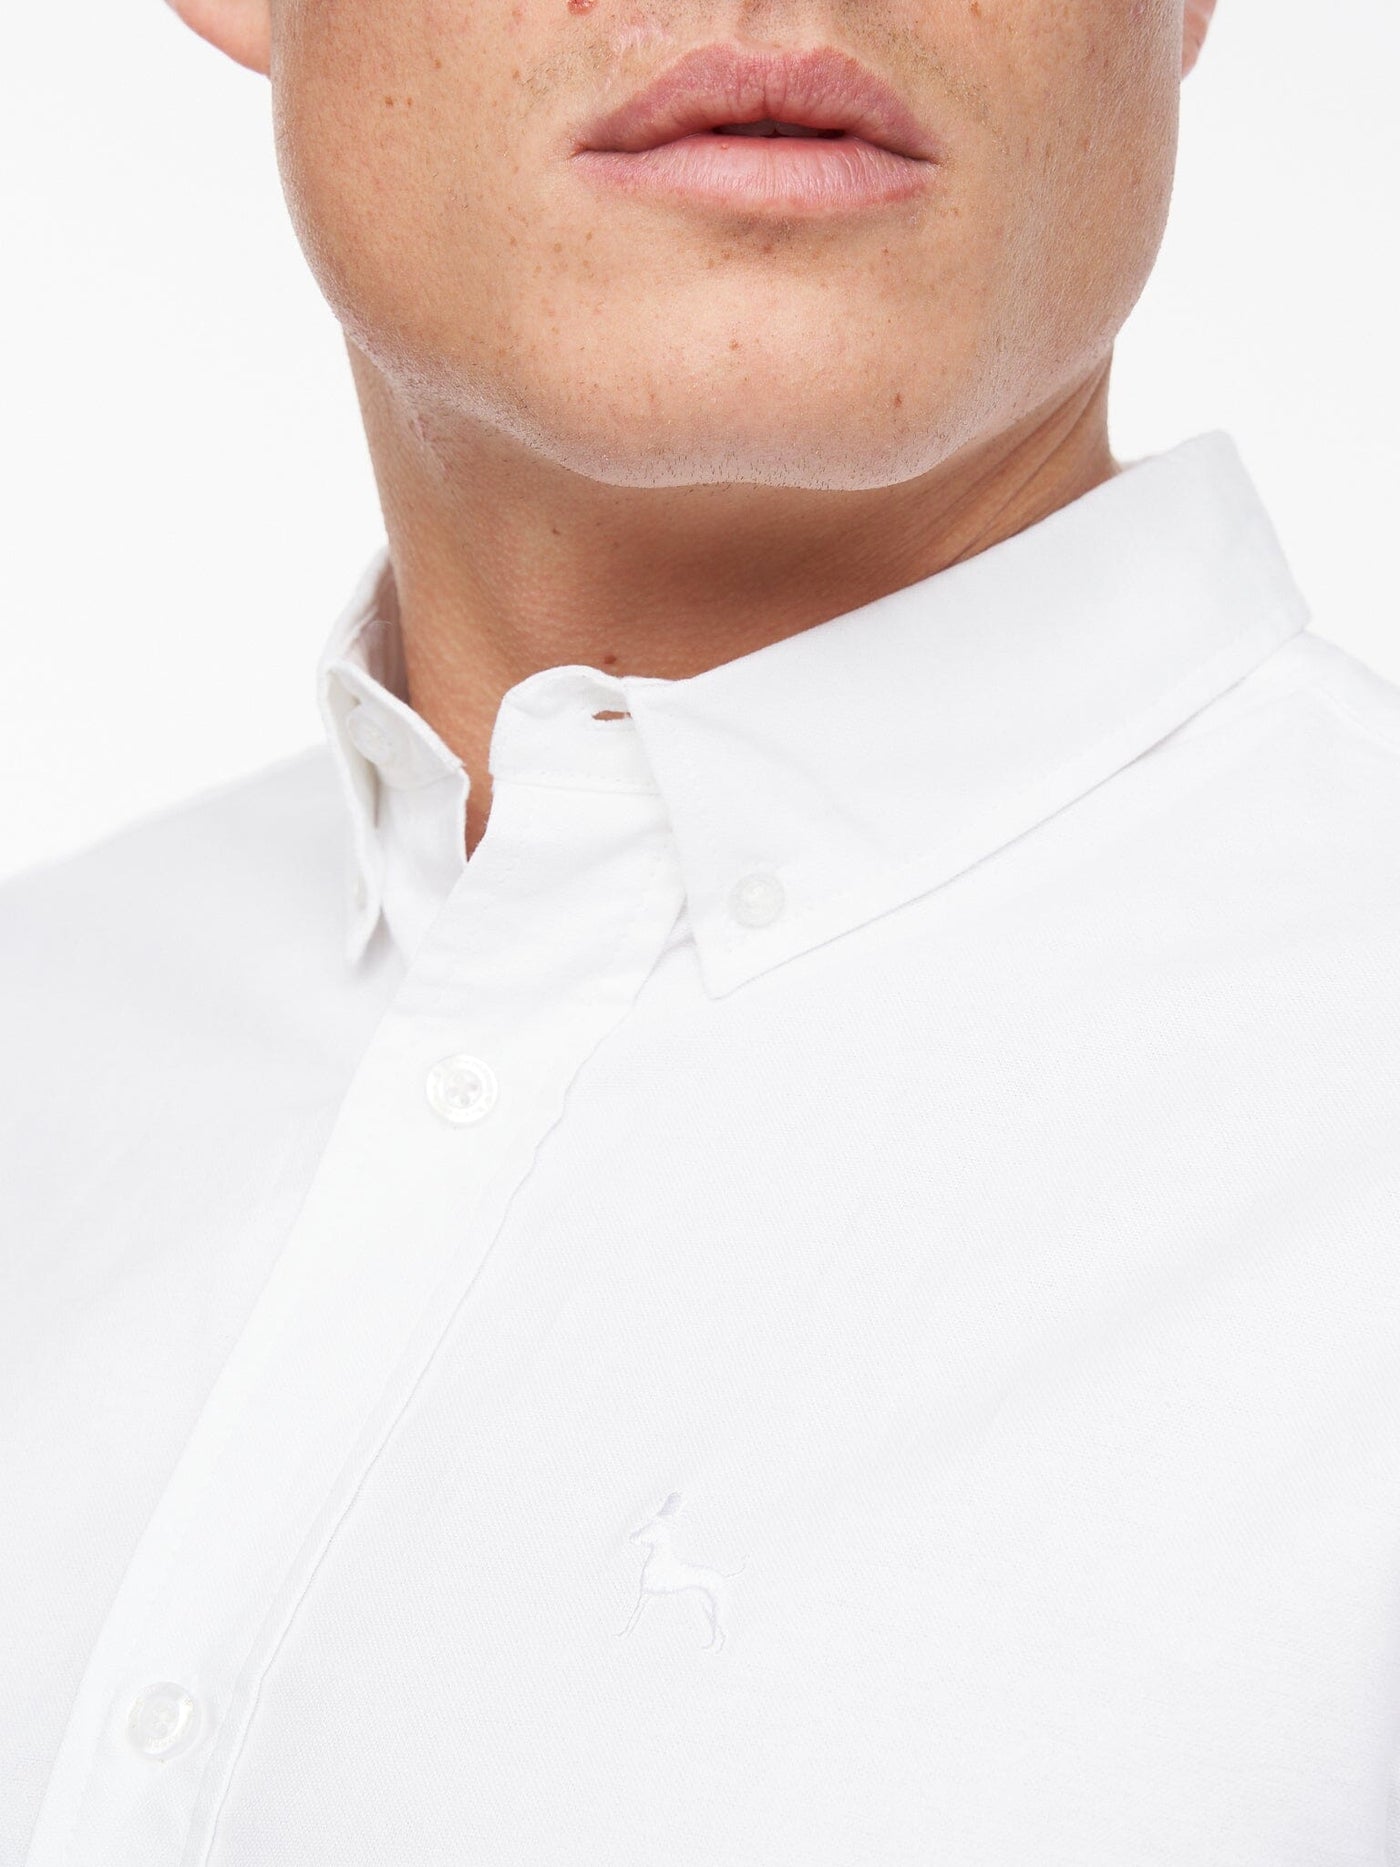 Ervin Oxford Shirt White